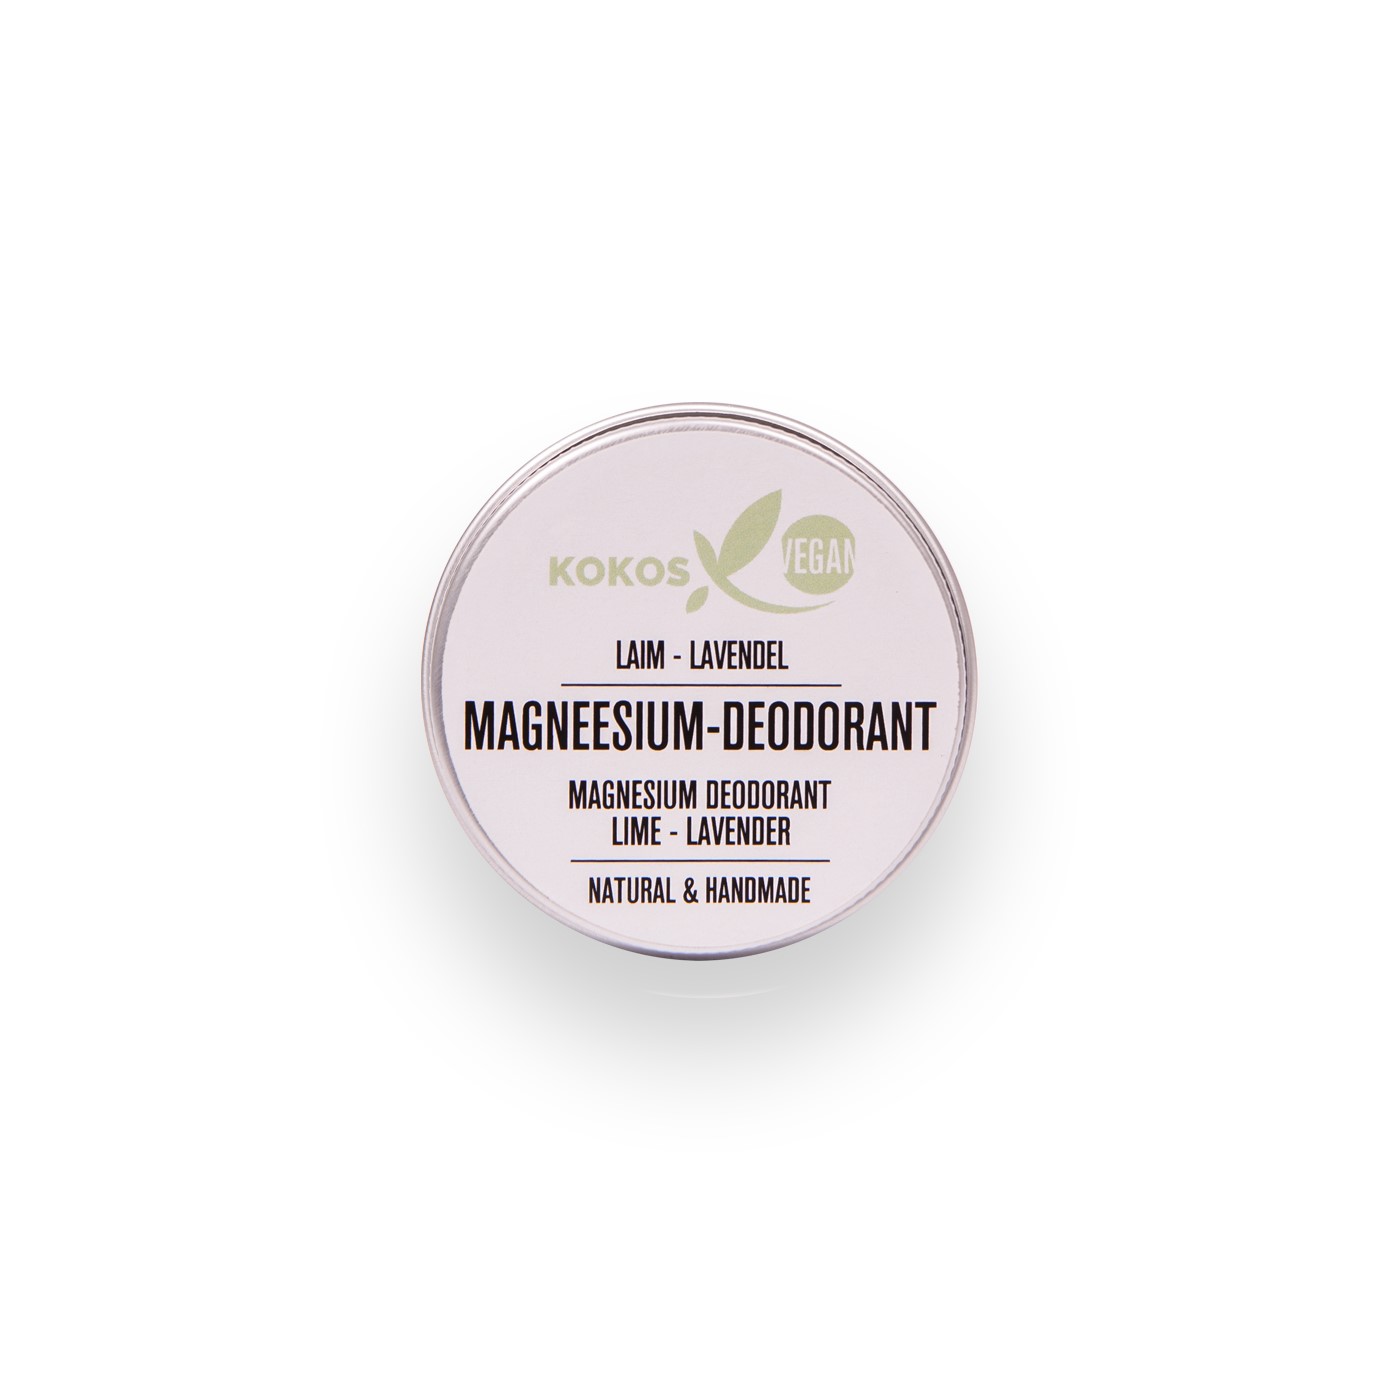 Mg deodorant30 laim-lavendel (2)